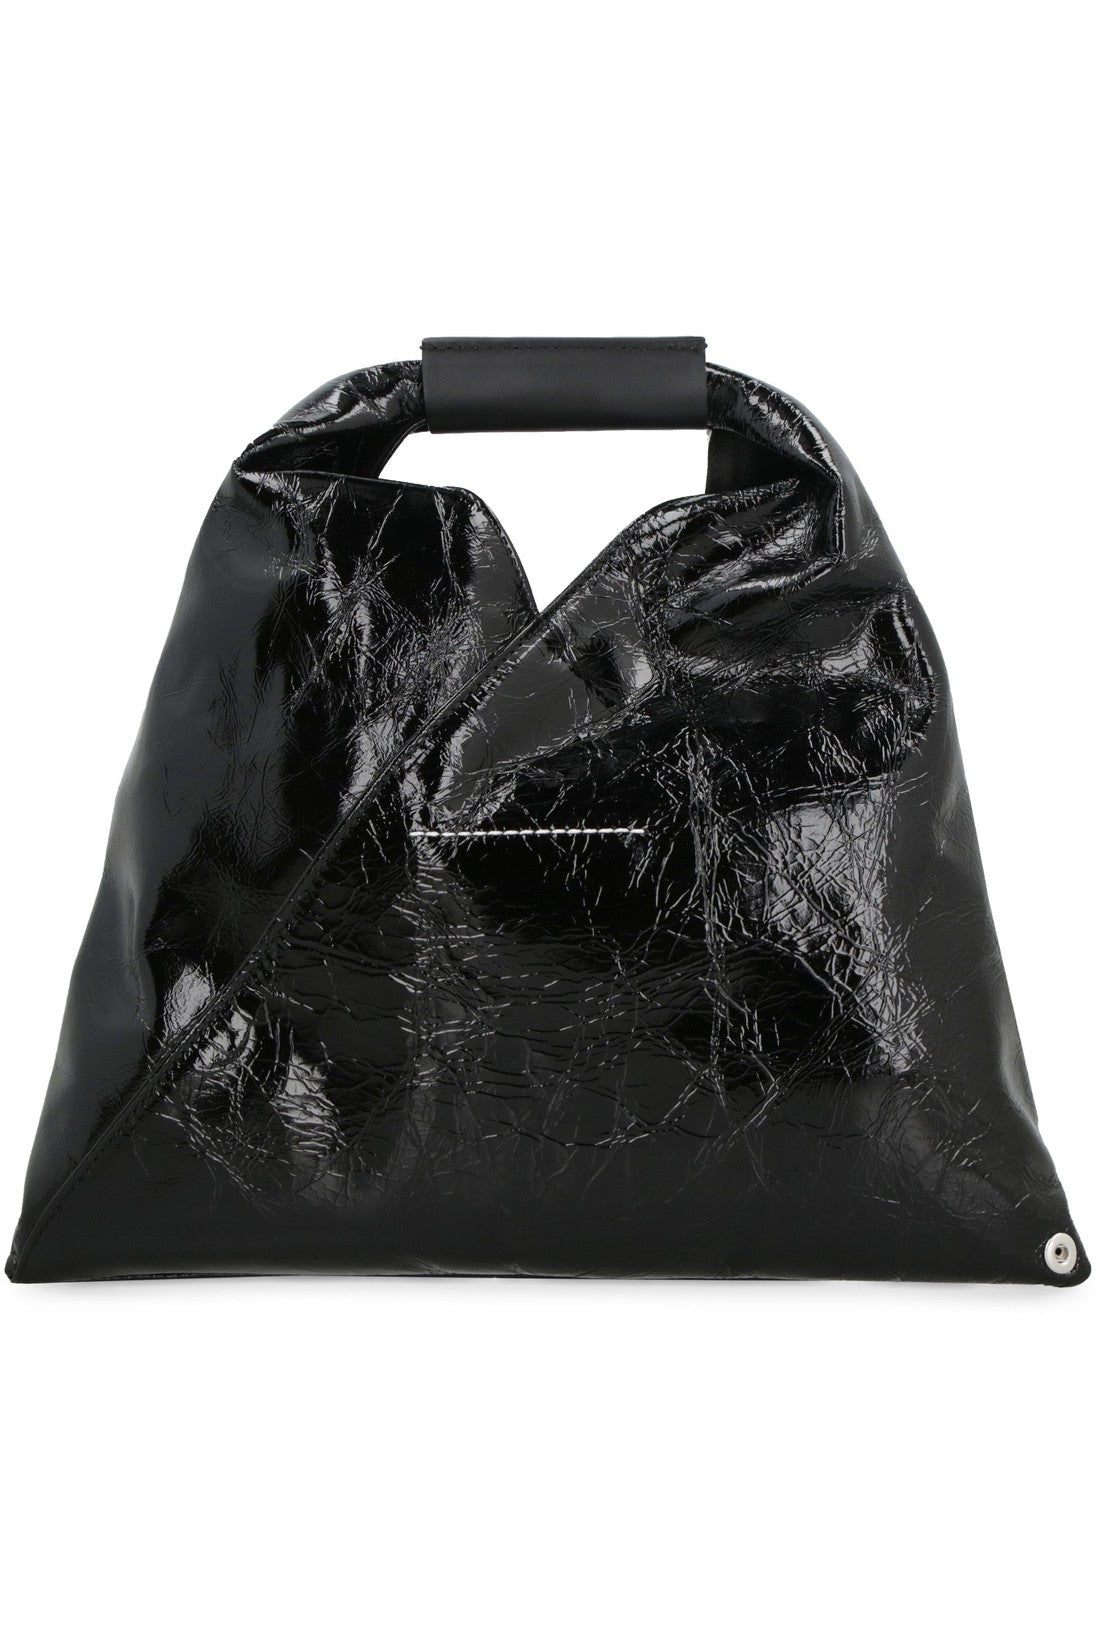 MM6 Maison Margiela-OUTLET-SALE-Japanese Classic leather mini handbag-ARCHIVIST